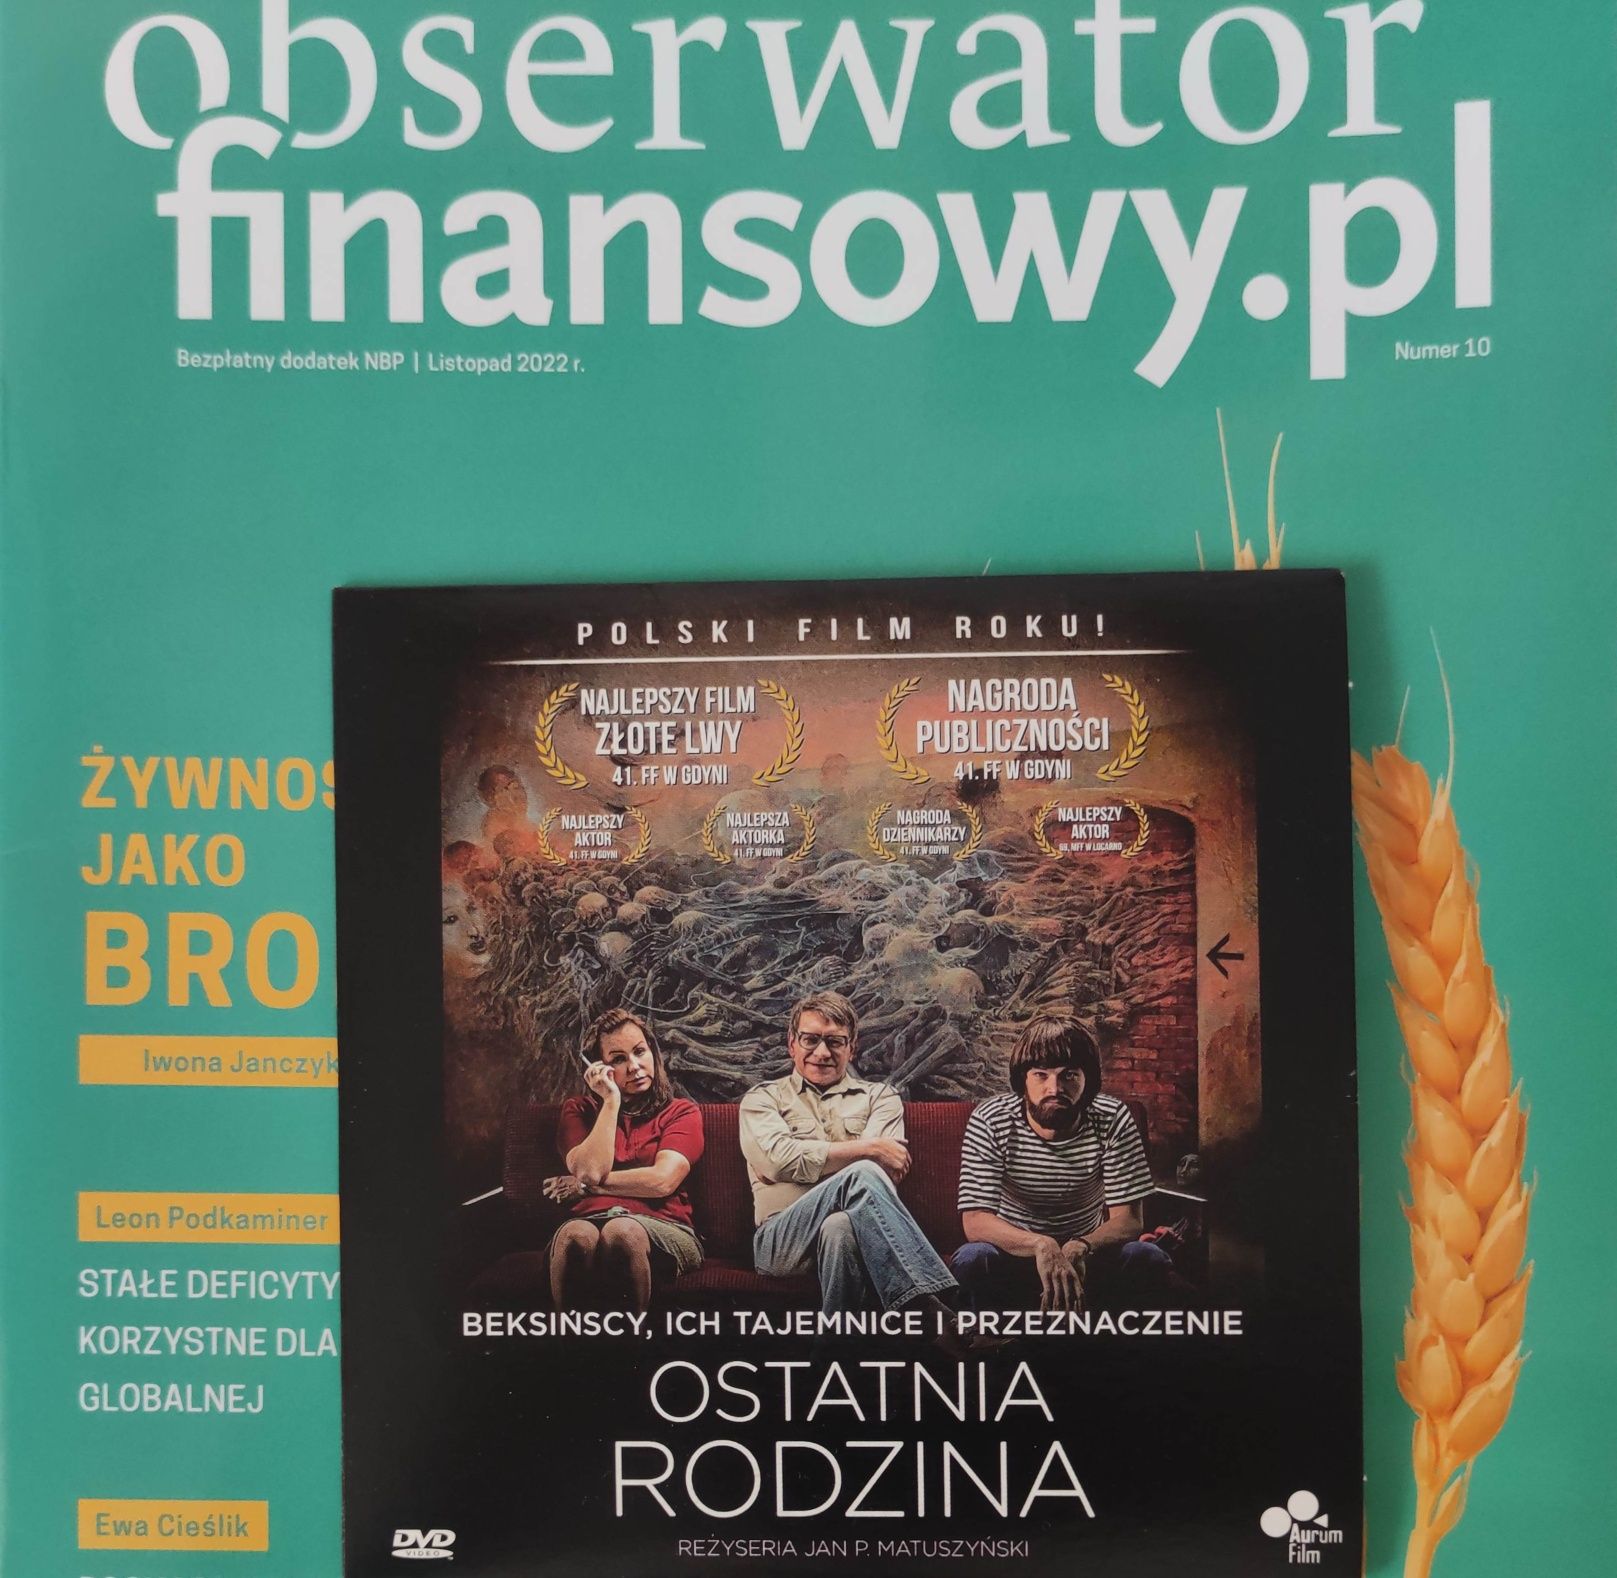 Film Ostatnia rodzina (DVD), polskie kino, Beksińscy, Złoty Lew